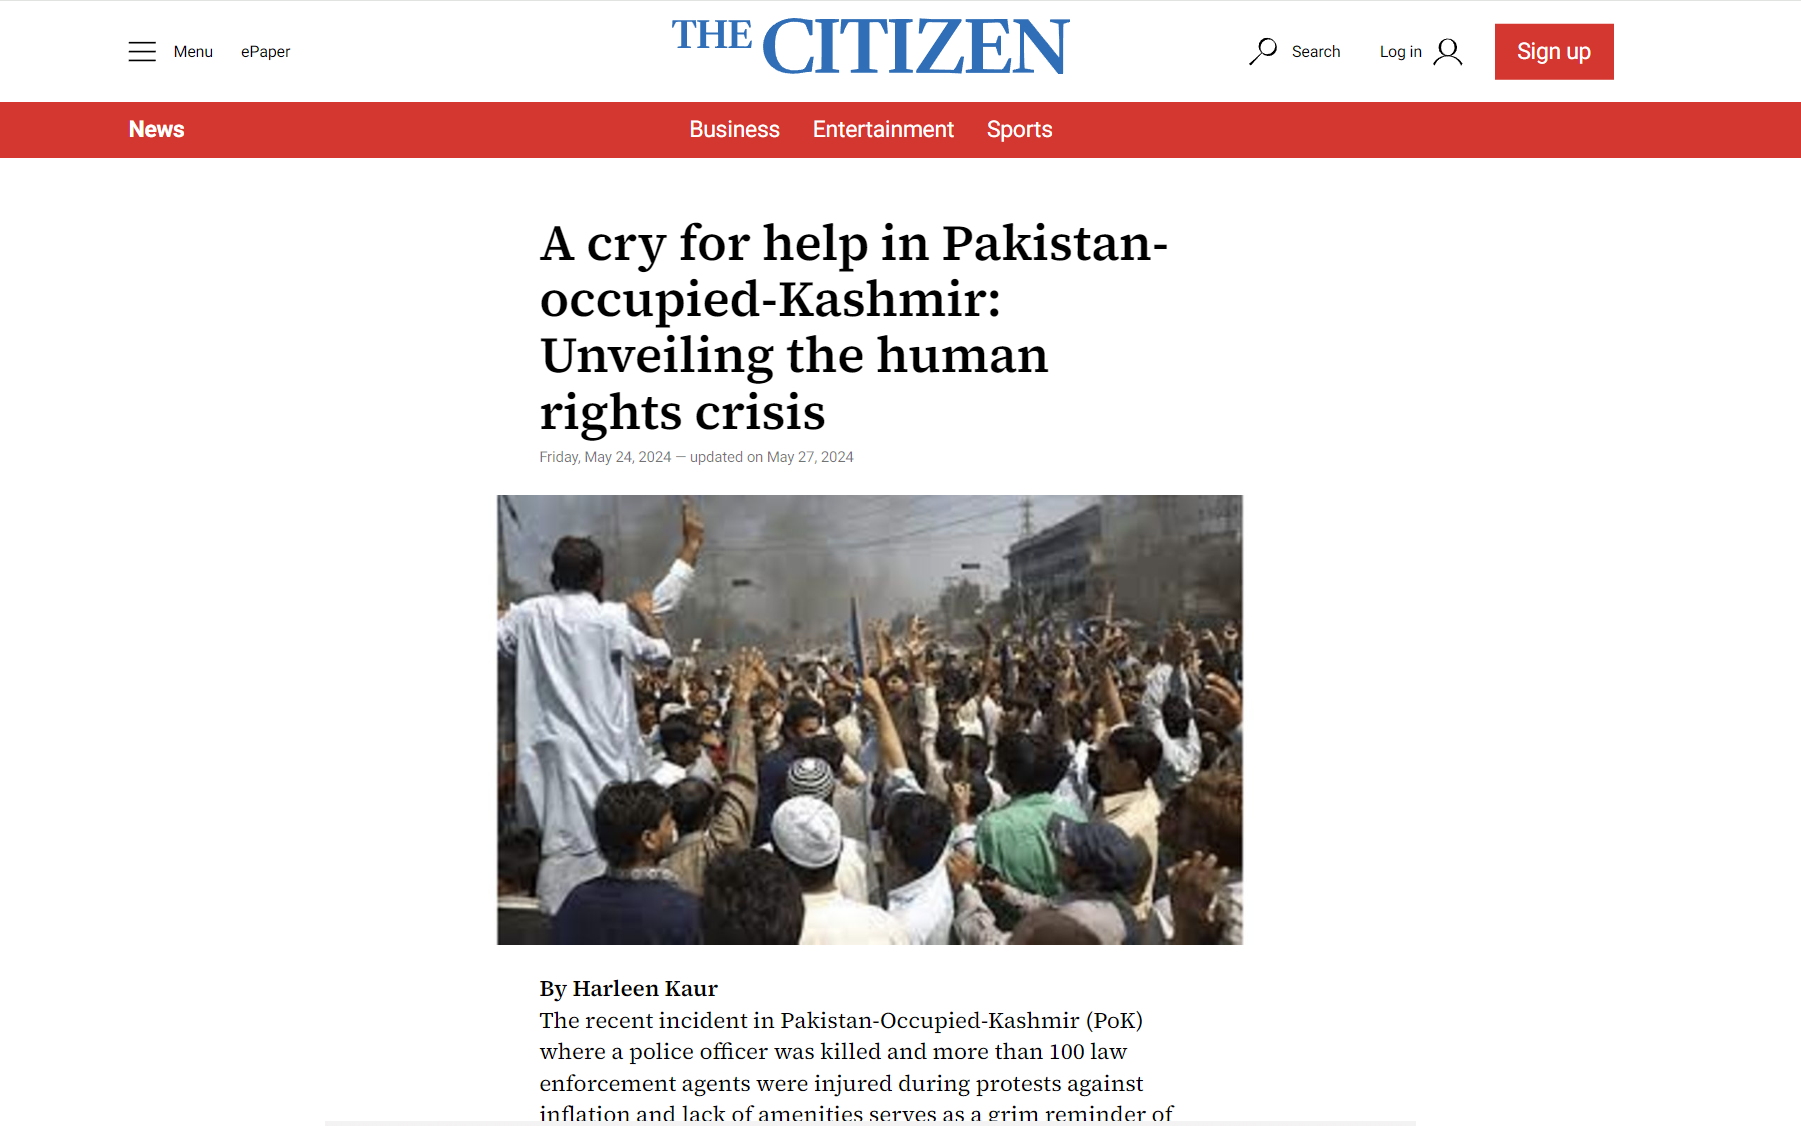 The Citizen: Μια κραυγή για βοήθεια στο κατεχόμενο από το Πακιστάν-Κασμίρ! Αποκάλυψη της κρίσης ανθρωπίνων δικαιωμάτων